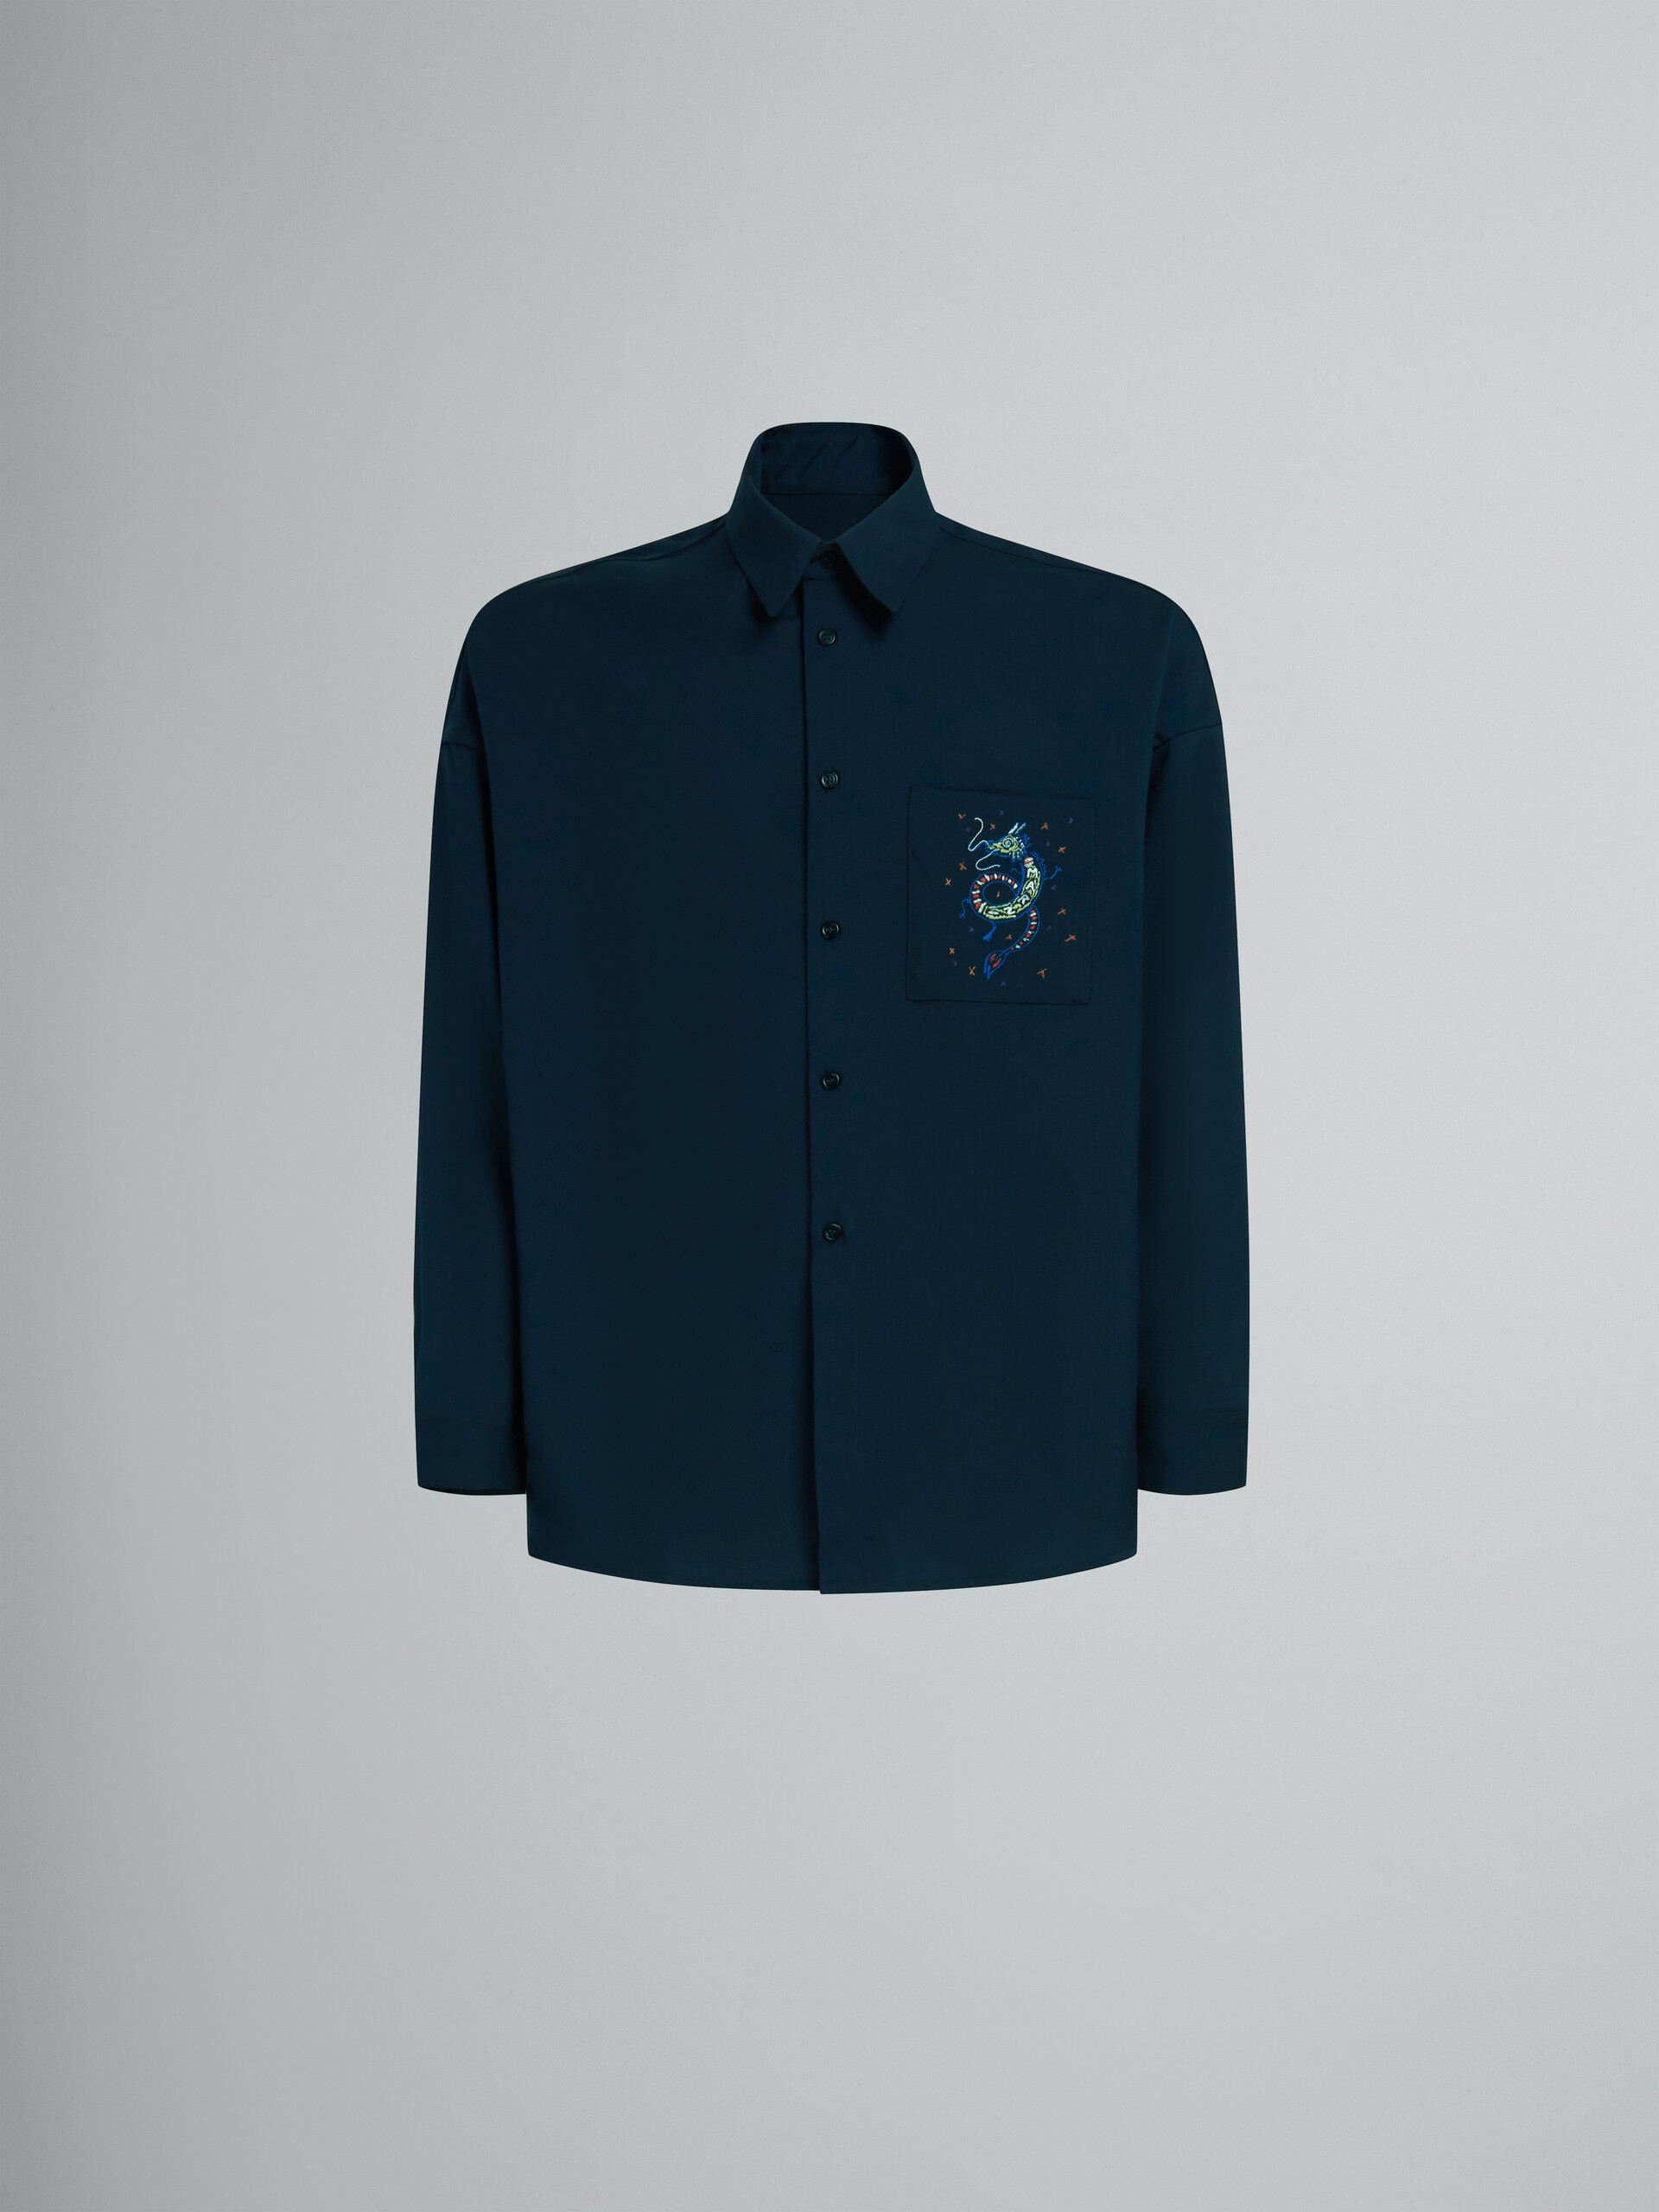 Dunkelblaues Wollhemd mit aufgesticktem Drachen - Hemden - Image 1